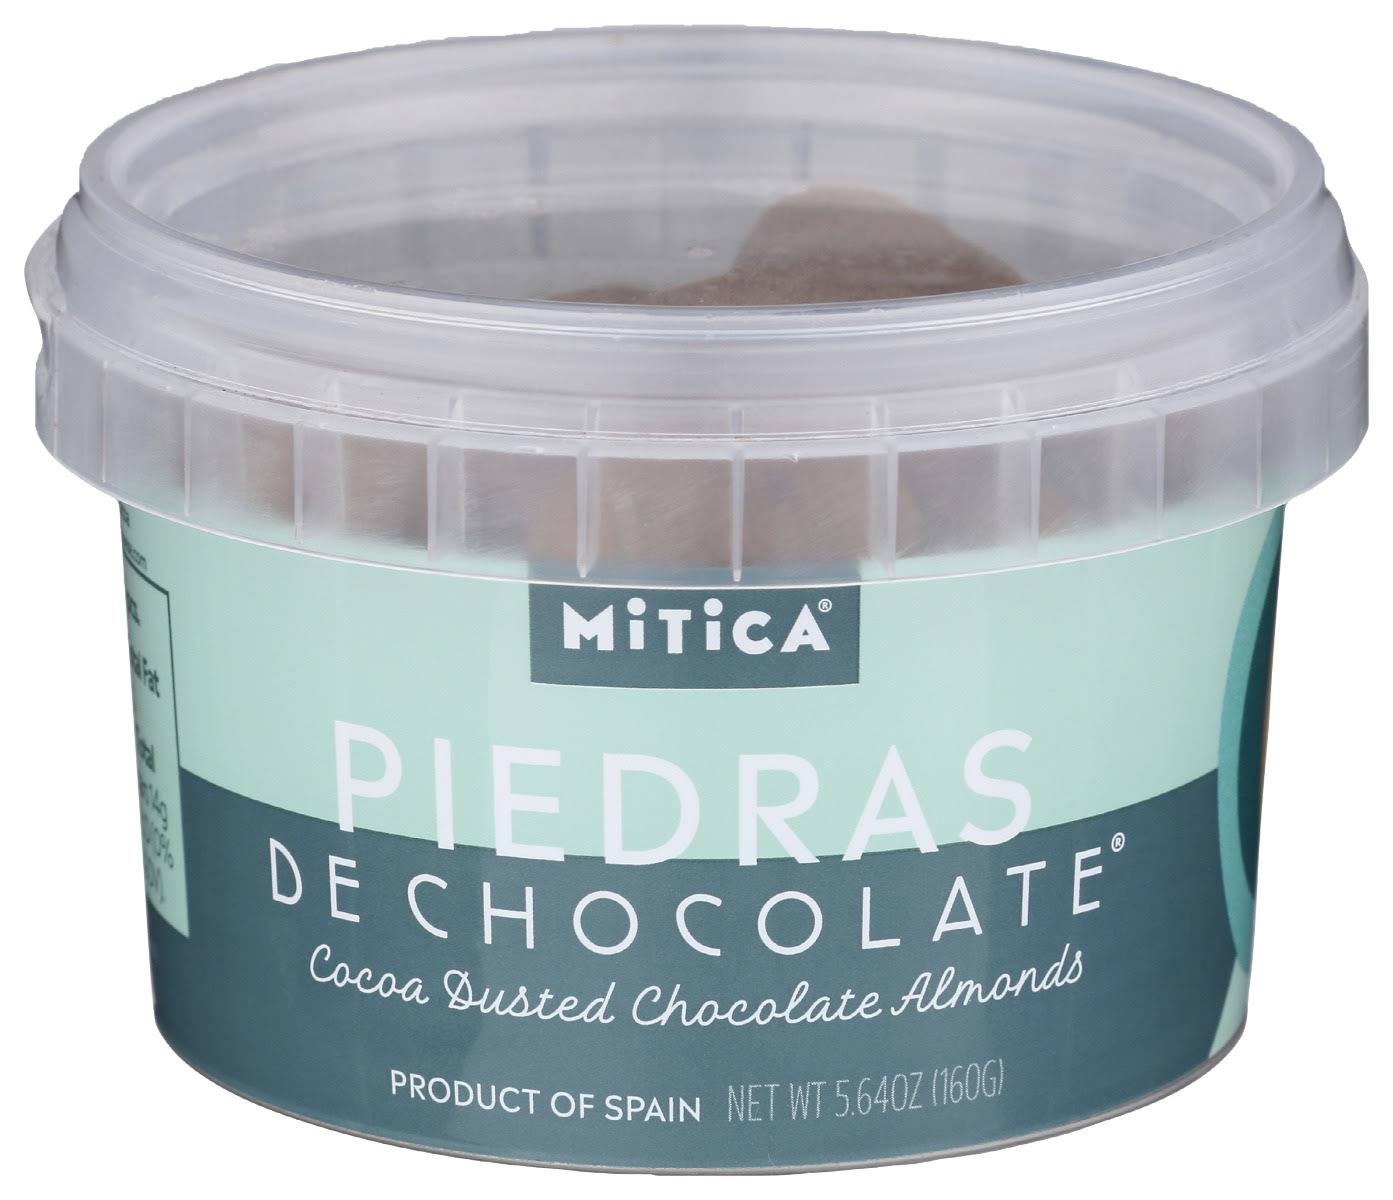 Mitica Cocoa Dusted Chocolate Almonds - 5.6 oz